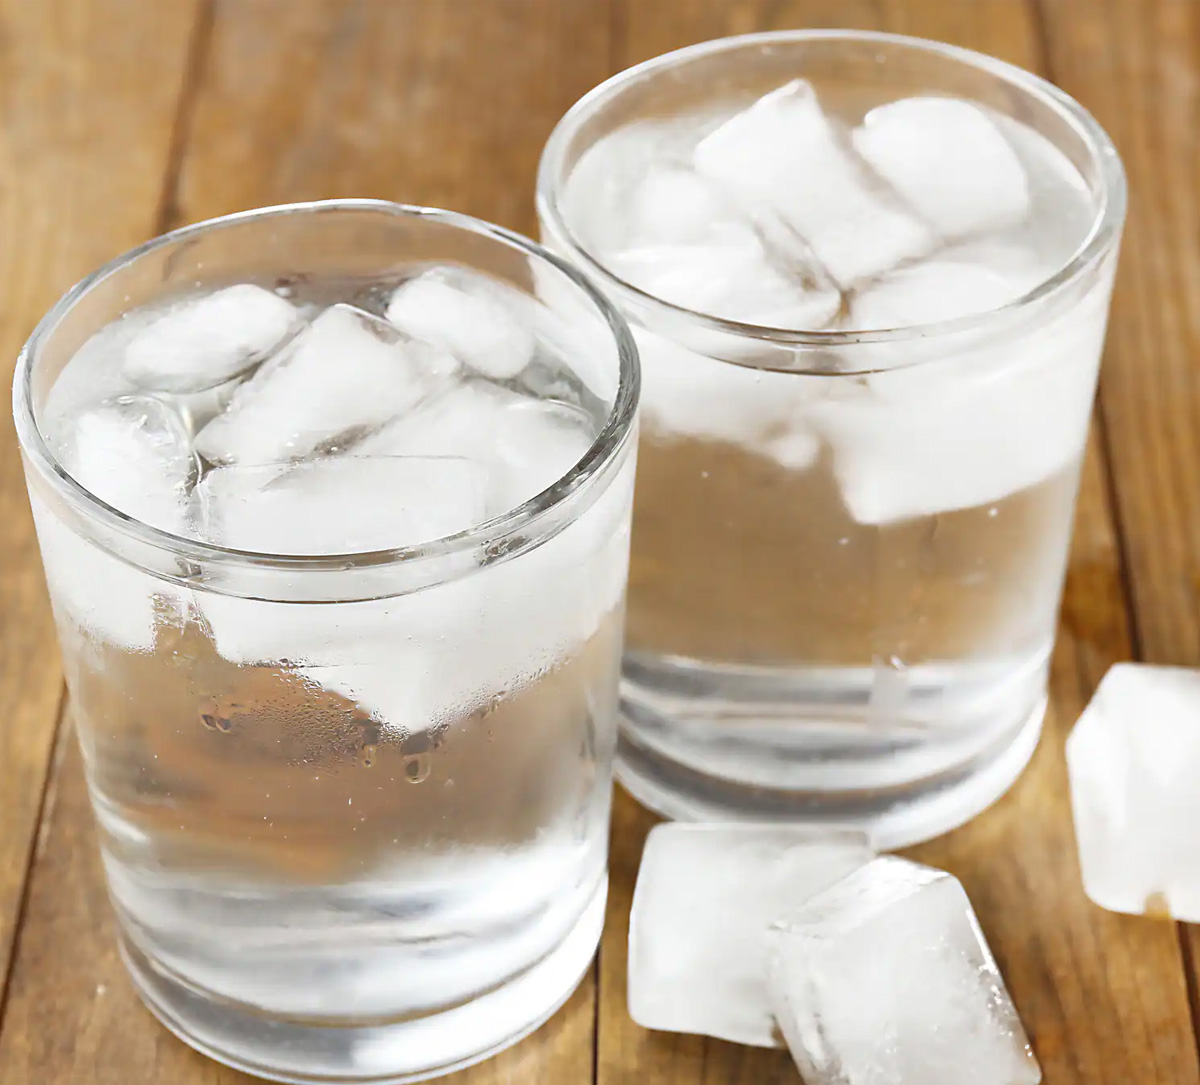 क्या वाकई ठंडा पानी पीना सेहत के लिए नुकसानदेह है? जानिए सच